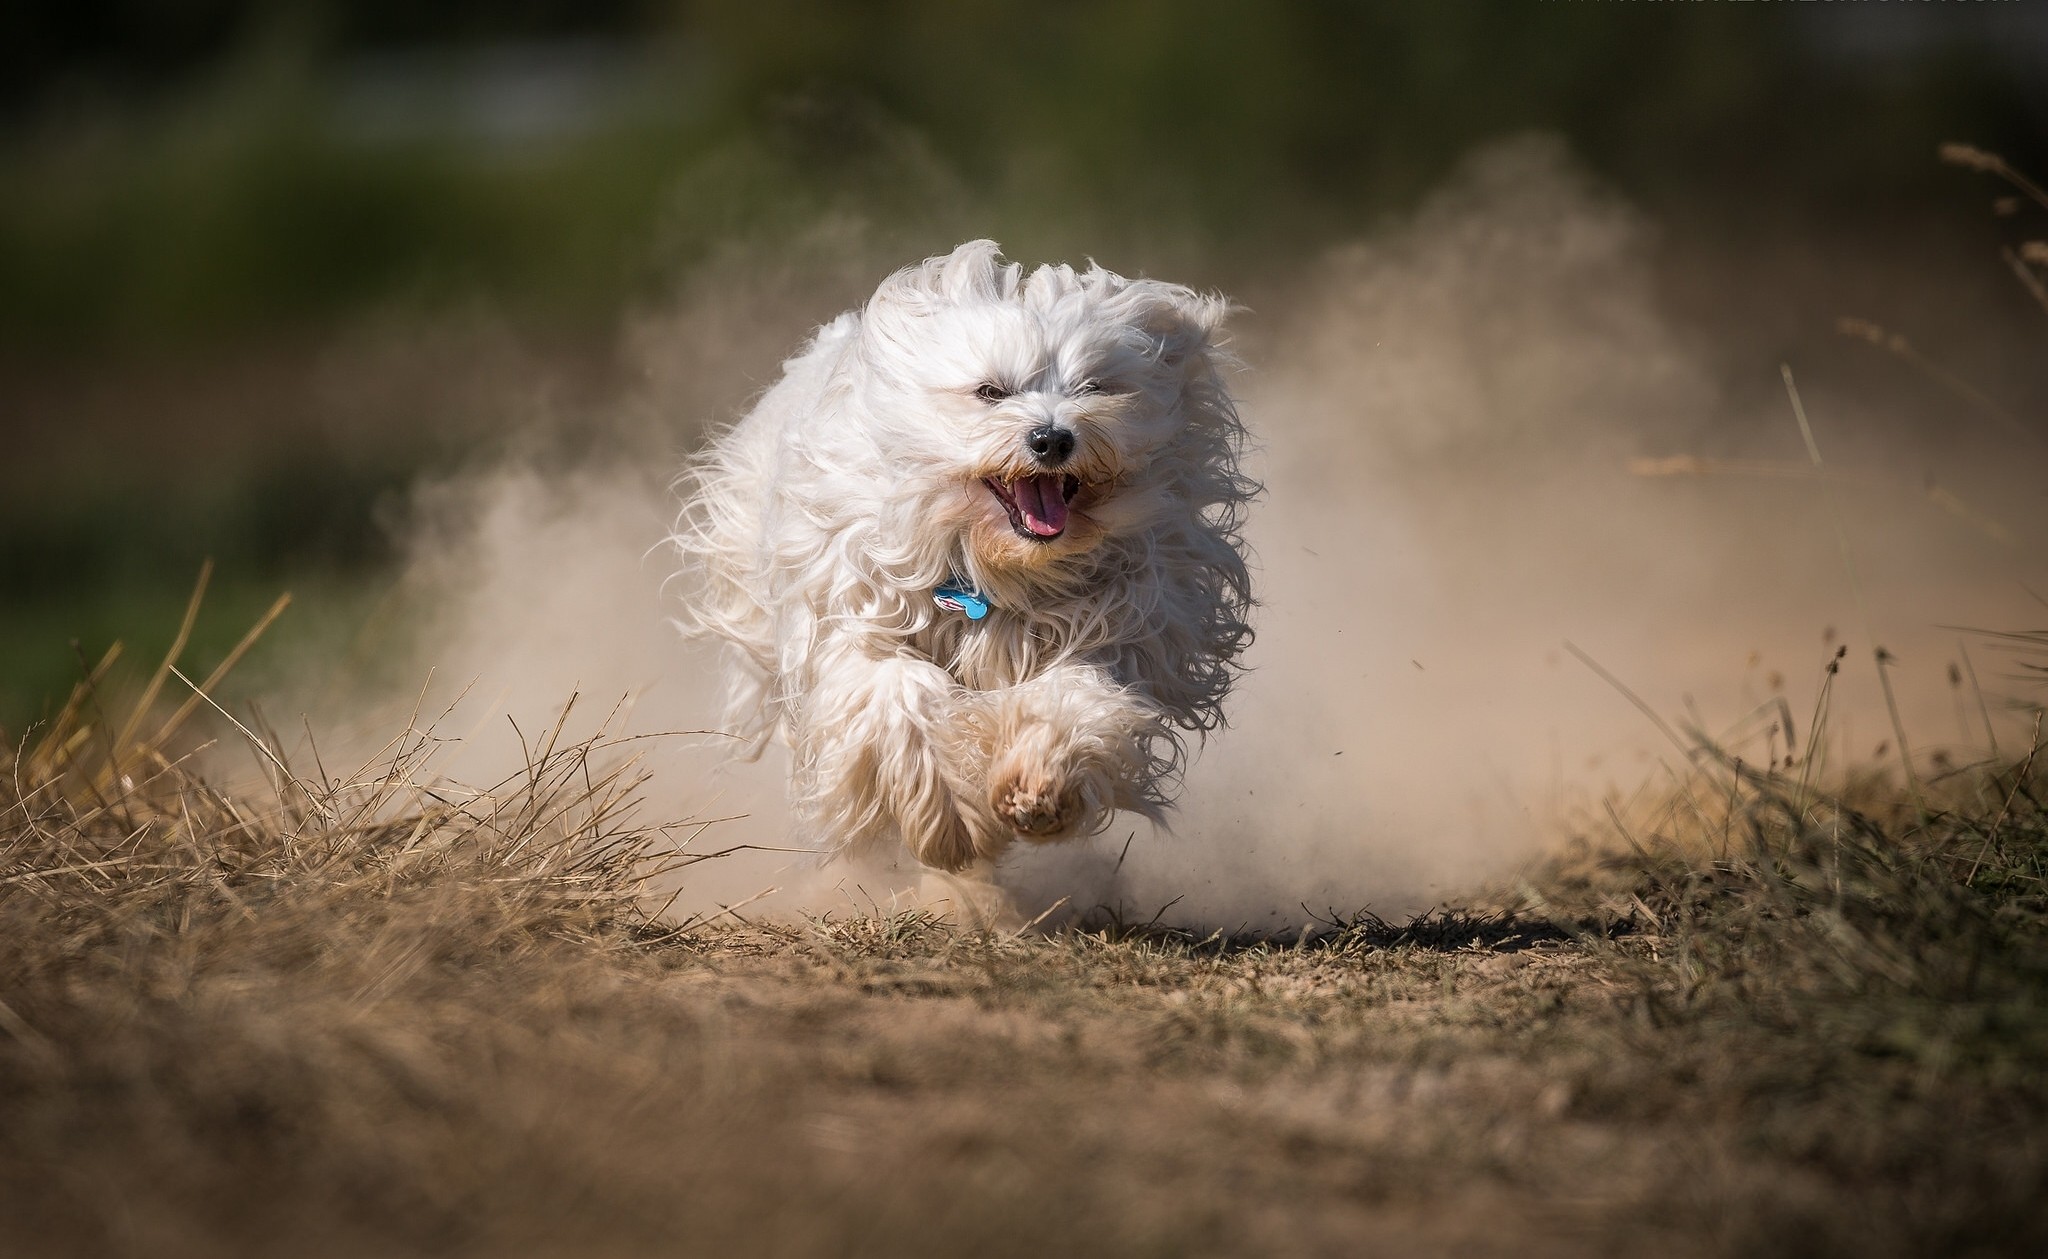 General 2048x1259 outdoors dog running animals dust depth of field dry grass dirt mammals